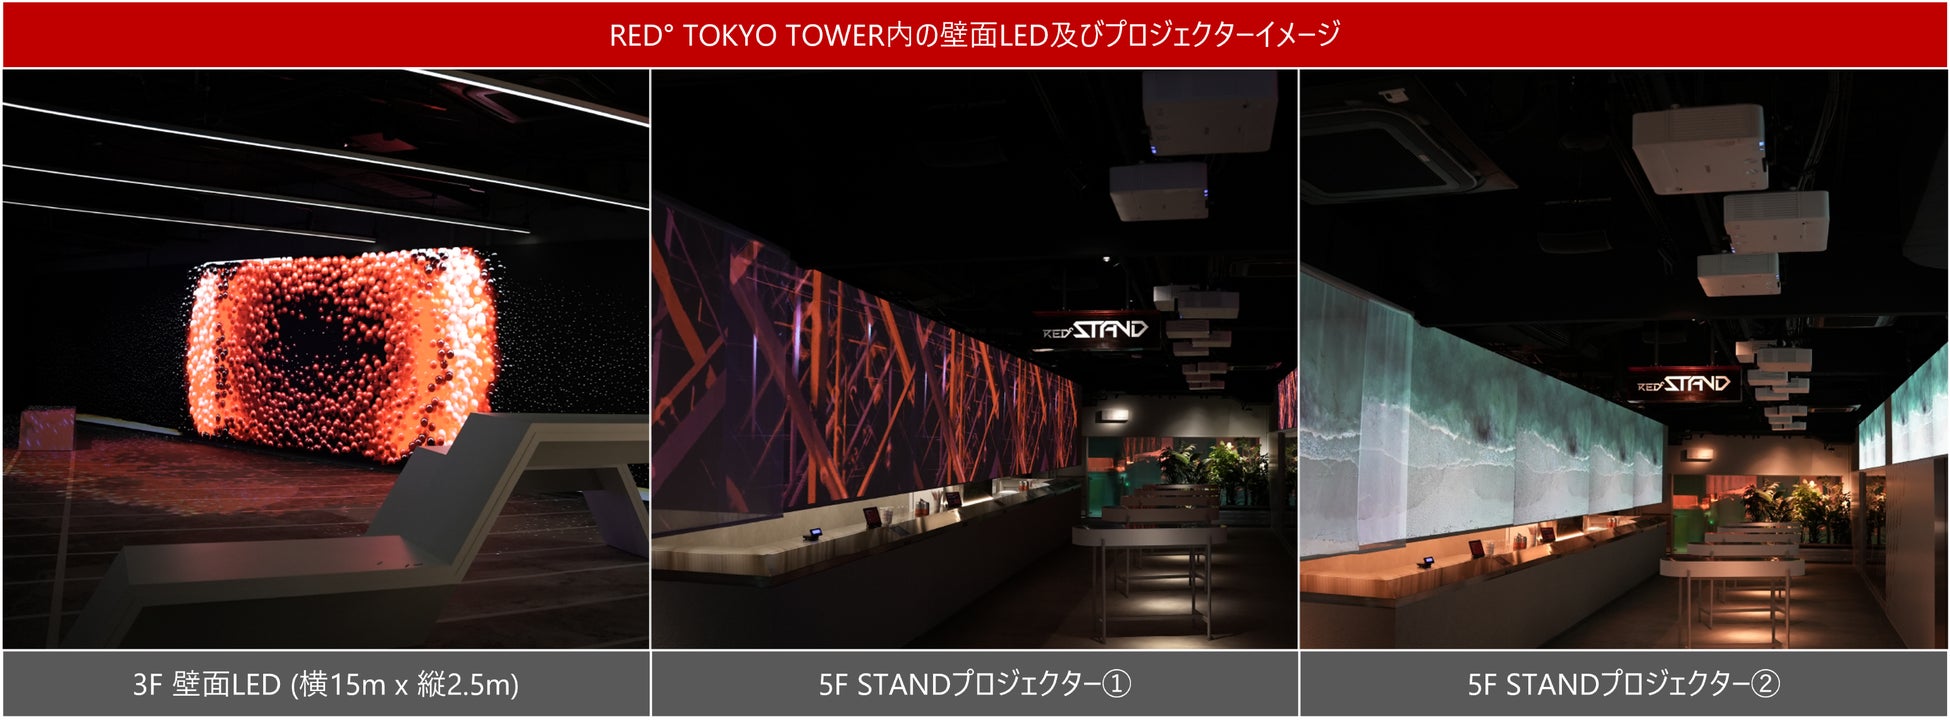 日本最大級のNFTアートギャラリーが東京タワーに！RED° TOKYO TOWER が「フューチャーアートギャラリープロジェクト」を始動